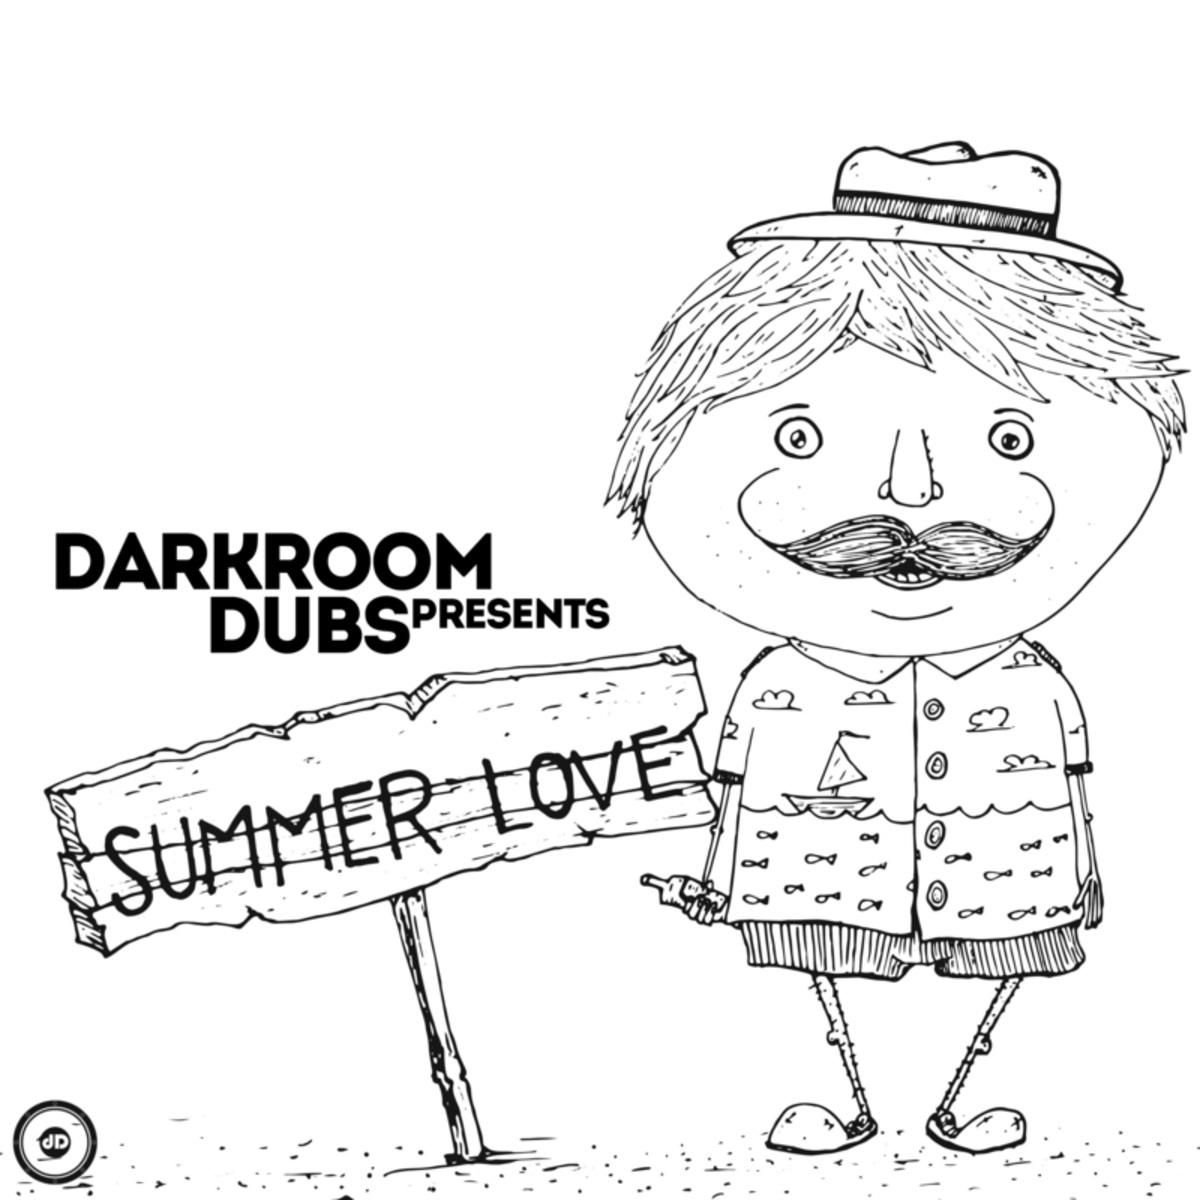 VA - Darkroom Dubs Presents Summer Love / Darkroom Dubs